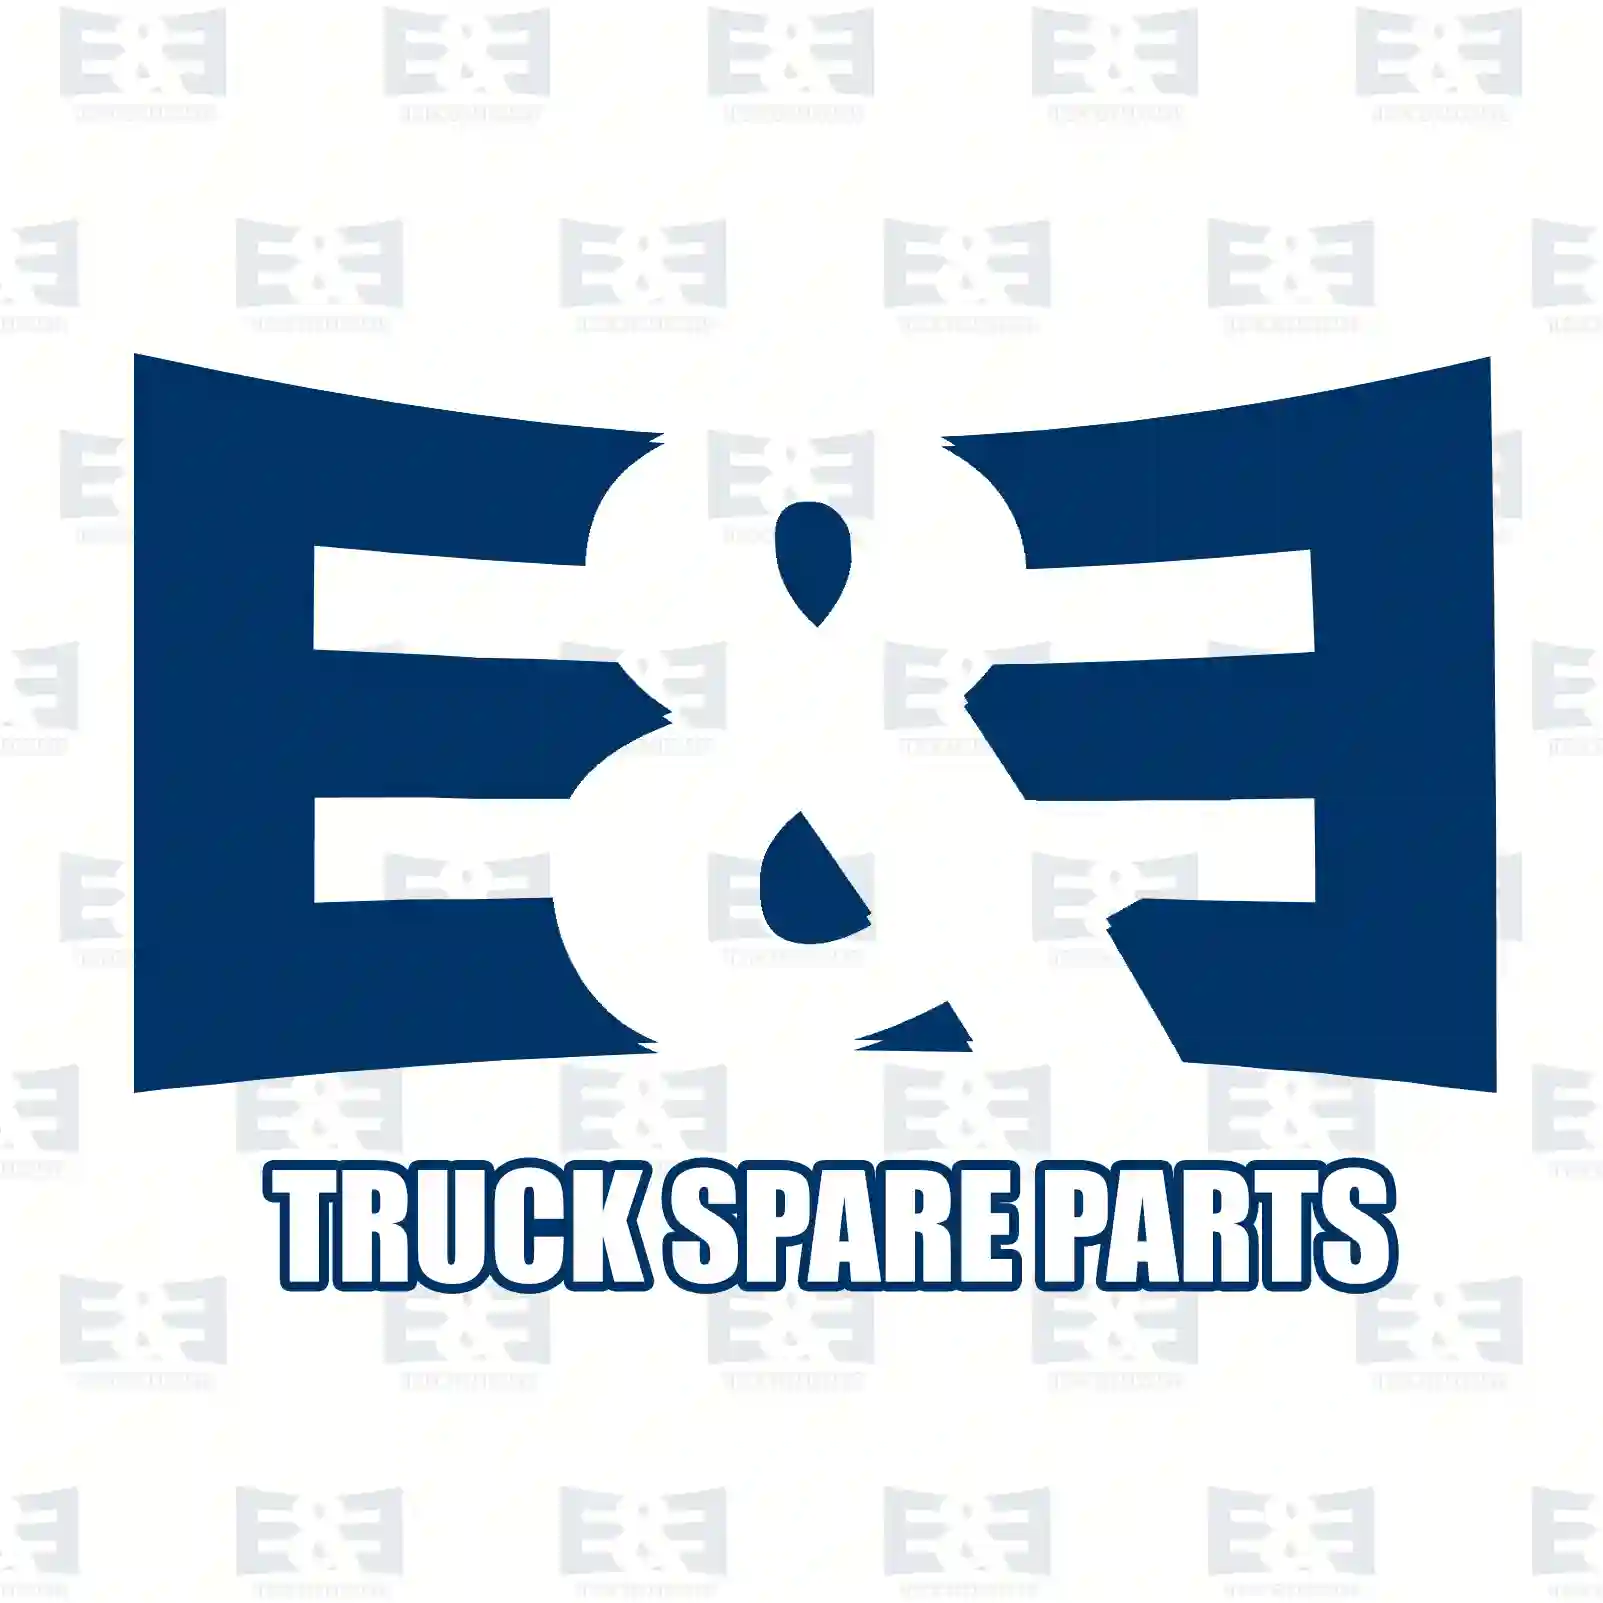 Spring bushing, 2E2283844, 1818034, BK21-5719-AC, ||  2E2283844 E&E Truck Spare Parts | Truck Spare Parts, Auotomotive Spare Parts Spring bushing, 2E2283844, 1818034, BK21-5719-AC, ||  2E2283844 E&E Truck Spare Parts | Truck Spare Parts, Auotomotive Spare Parts